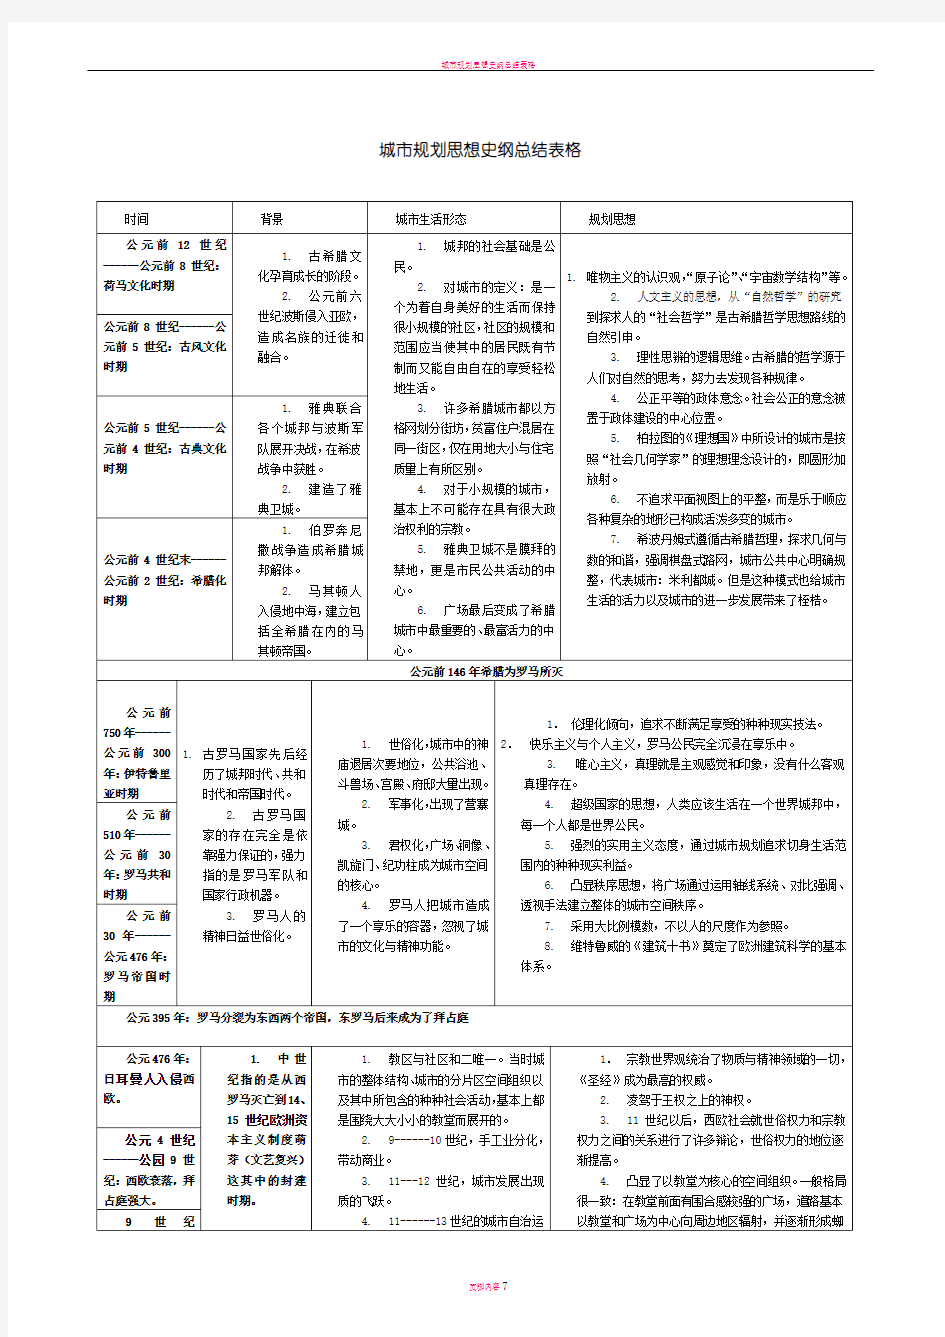 张京祥-西方城市规划思想史纲总结表格。